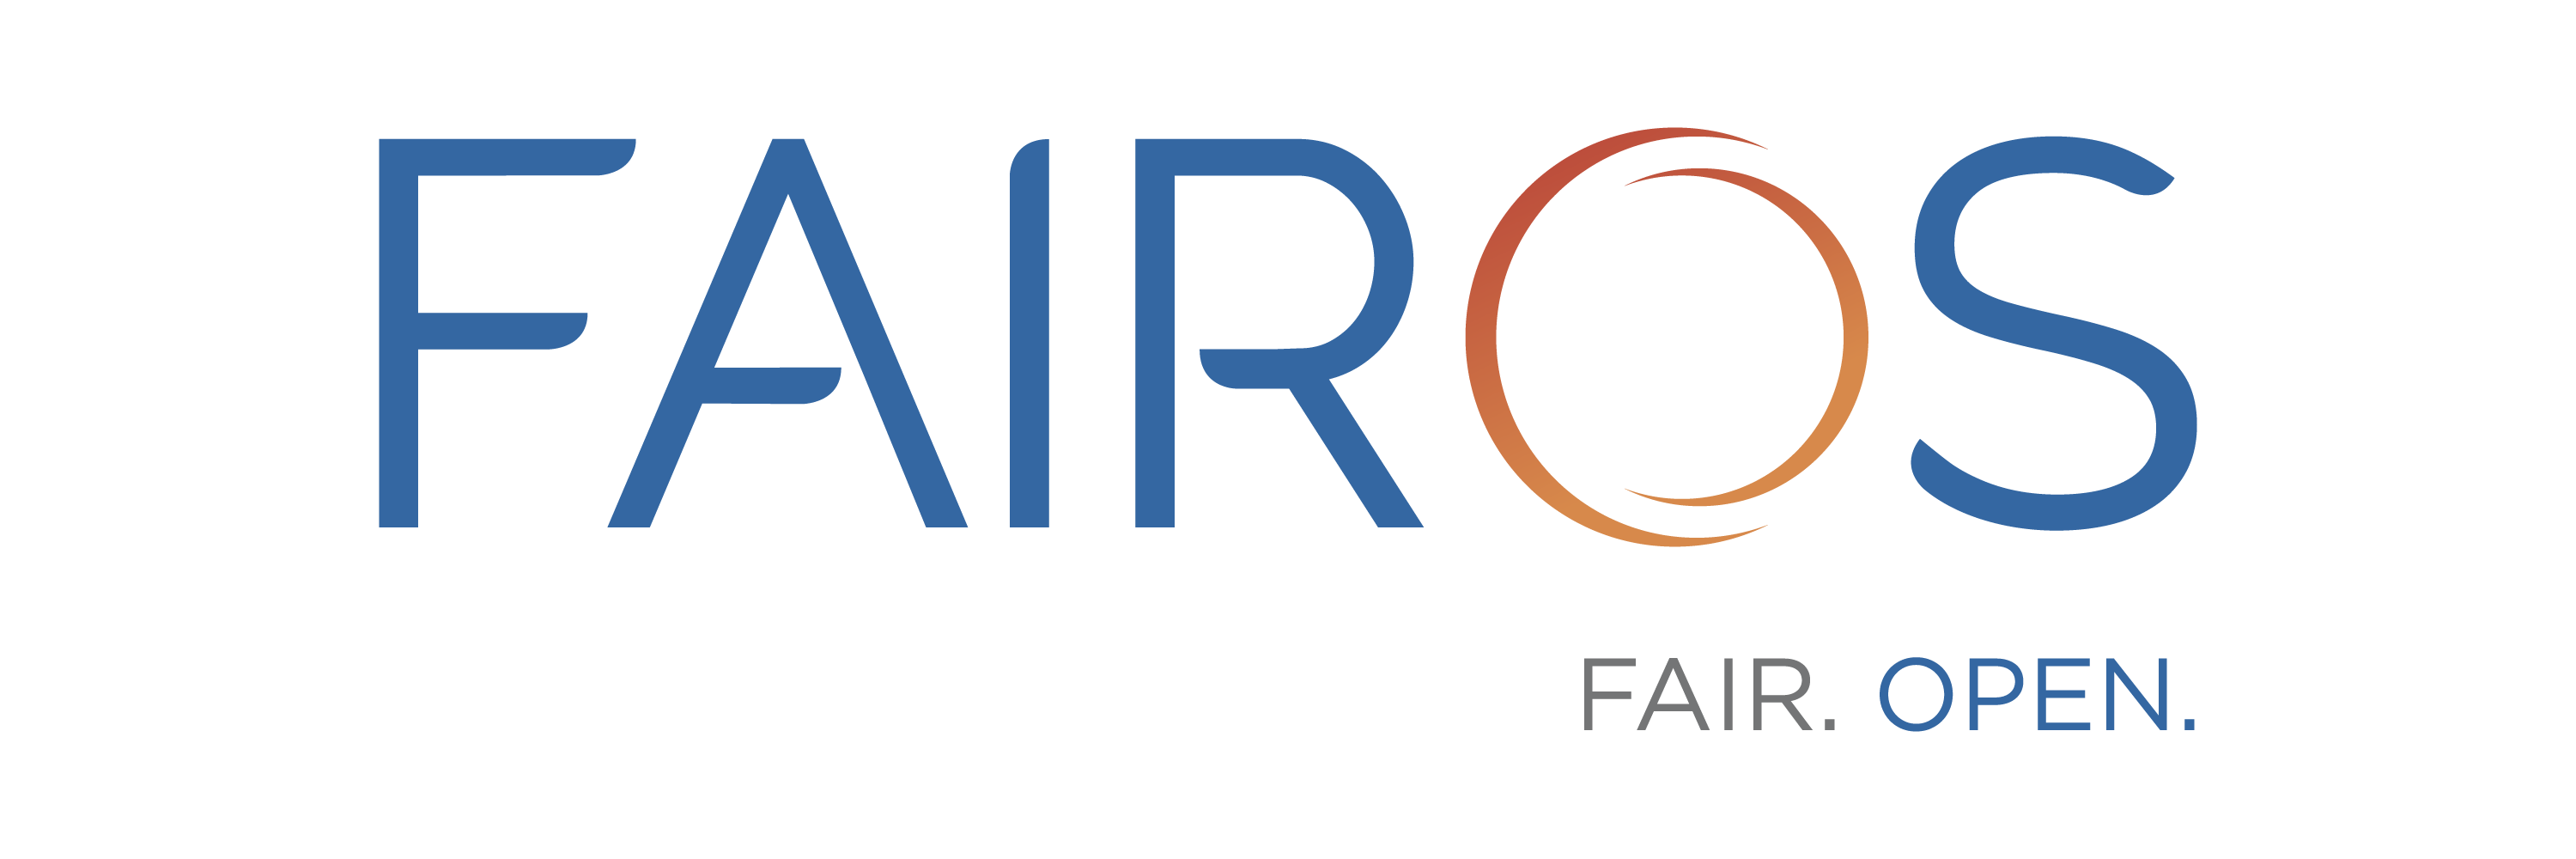 Fairos Logo